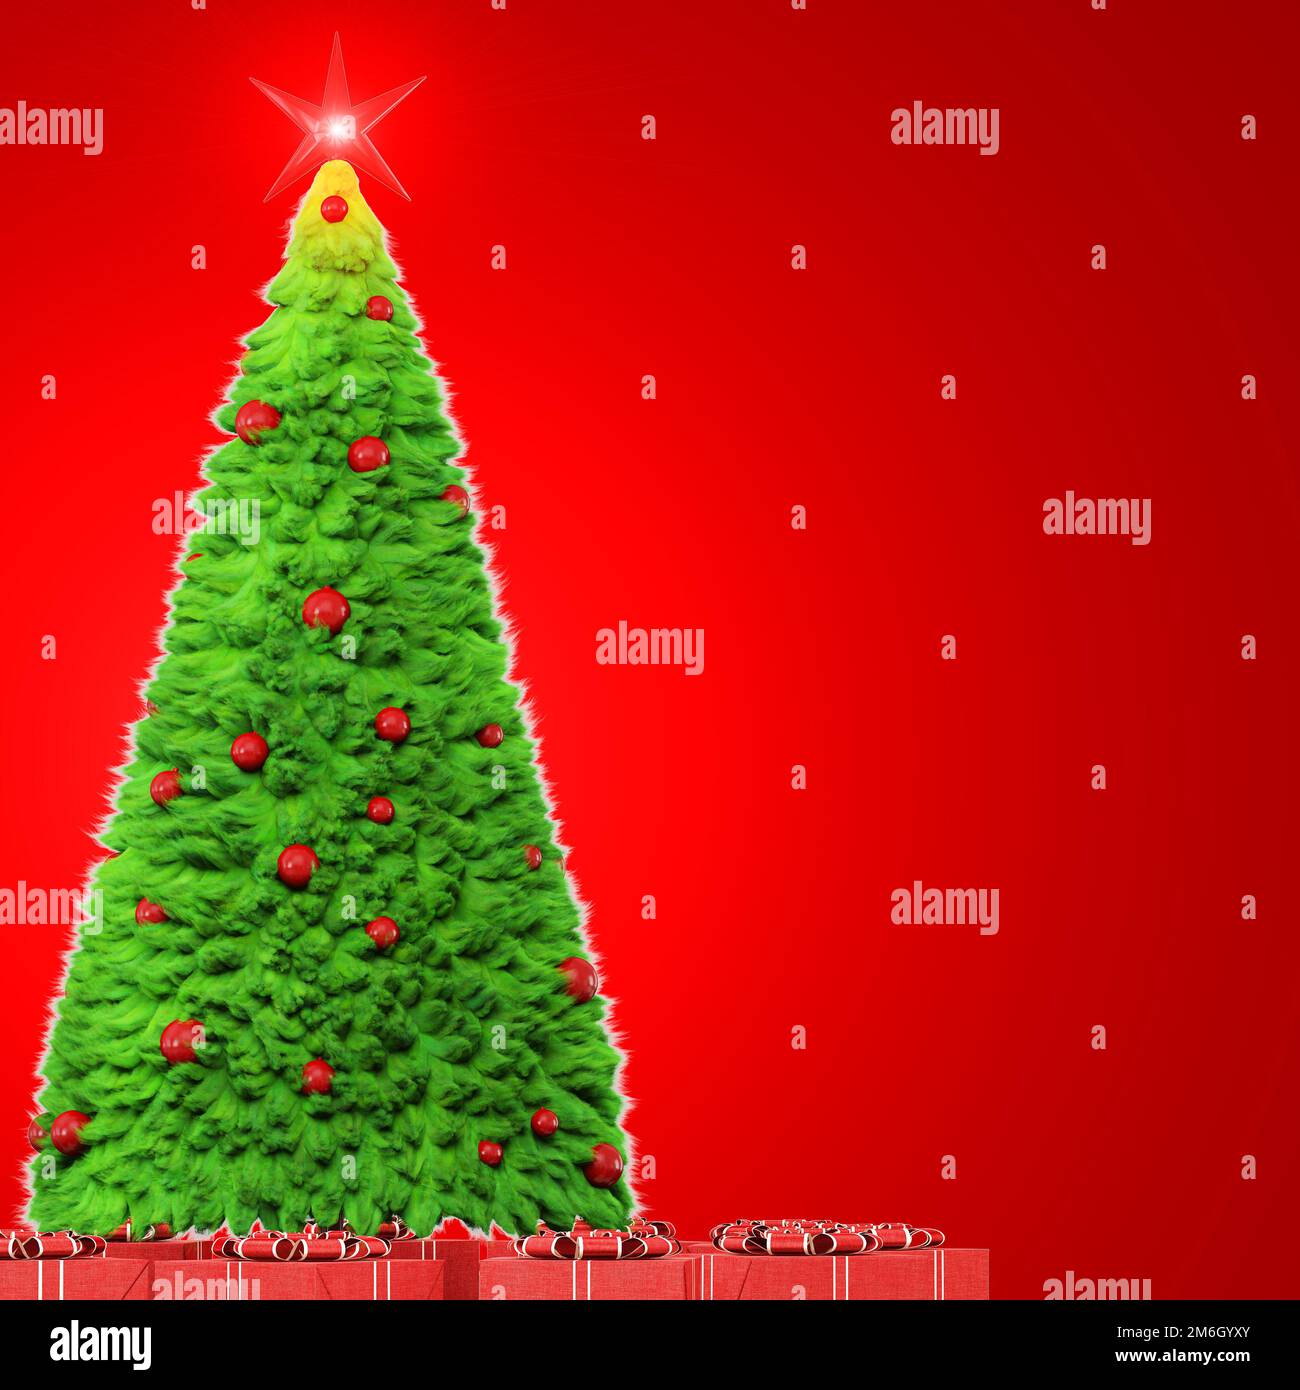 Eine grüne Weihnachtsbaumwolle aus Fell wird von einer Hintergrundbeleuchtung auf rotem Hintergrund beleuchtet. Weihnachtsbaum mit runden, roten Spielzeugen, Stockfoto